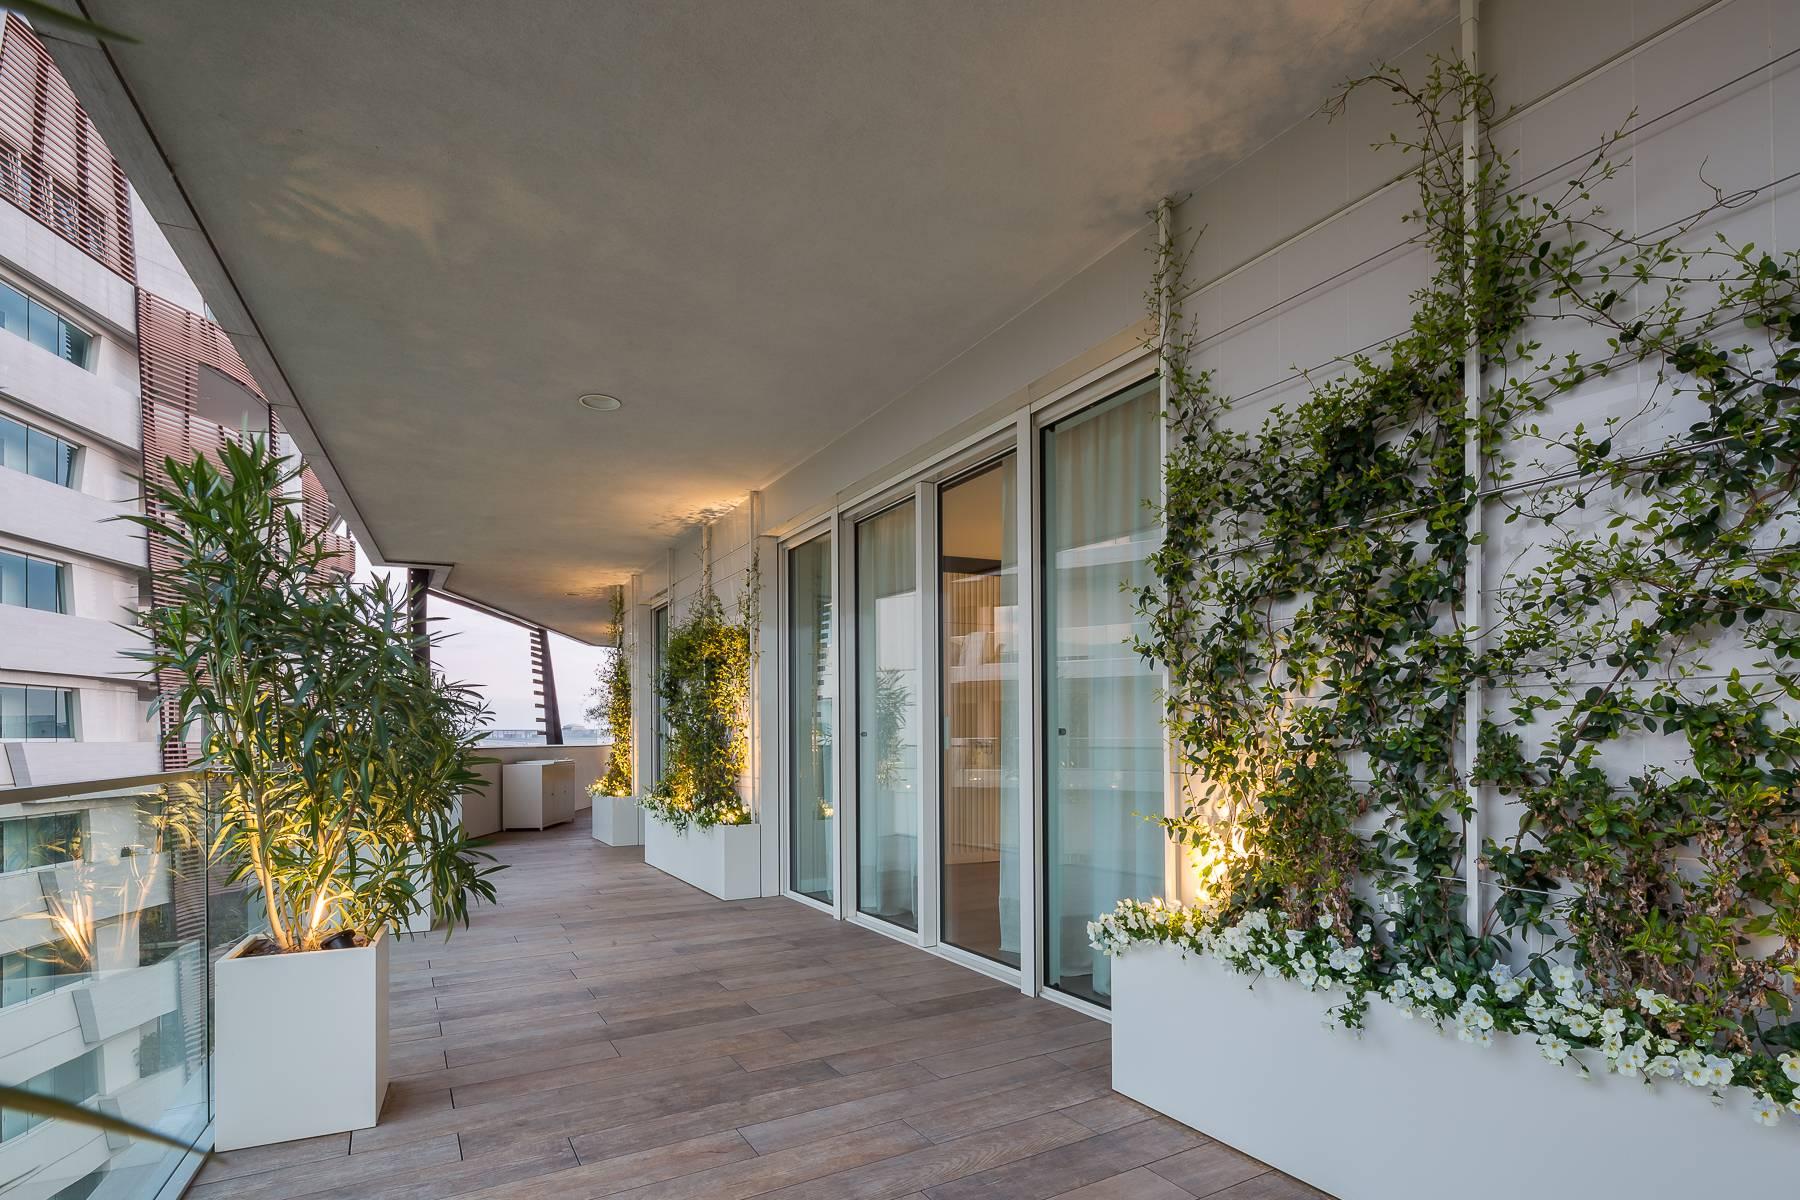 Wunderschöne möblierte Design-Wohnung mit Terrassen im CitylIfe Stadtviertel - 45